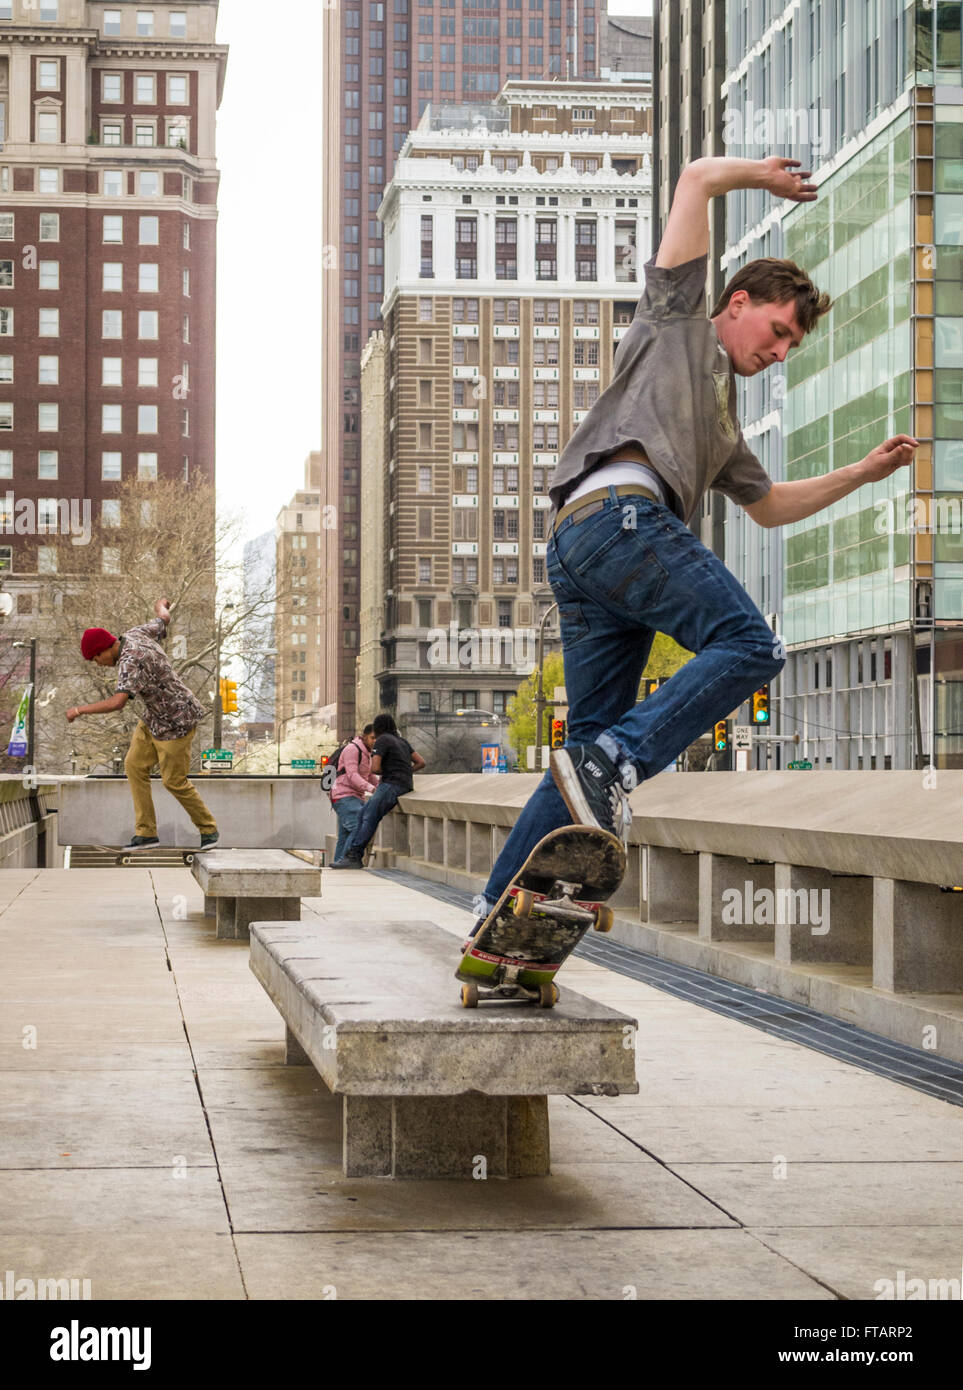 Città urbana scena di giovani uomini lo skateboard su una piazza pubblica nel centro cittadino di Philadelphia, Pennsylvania, STATI UNITI D'AMERICA Foto Stock